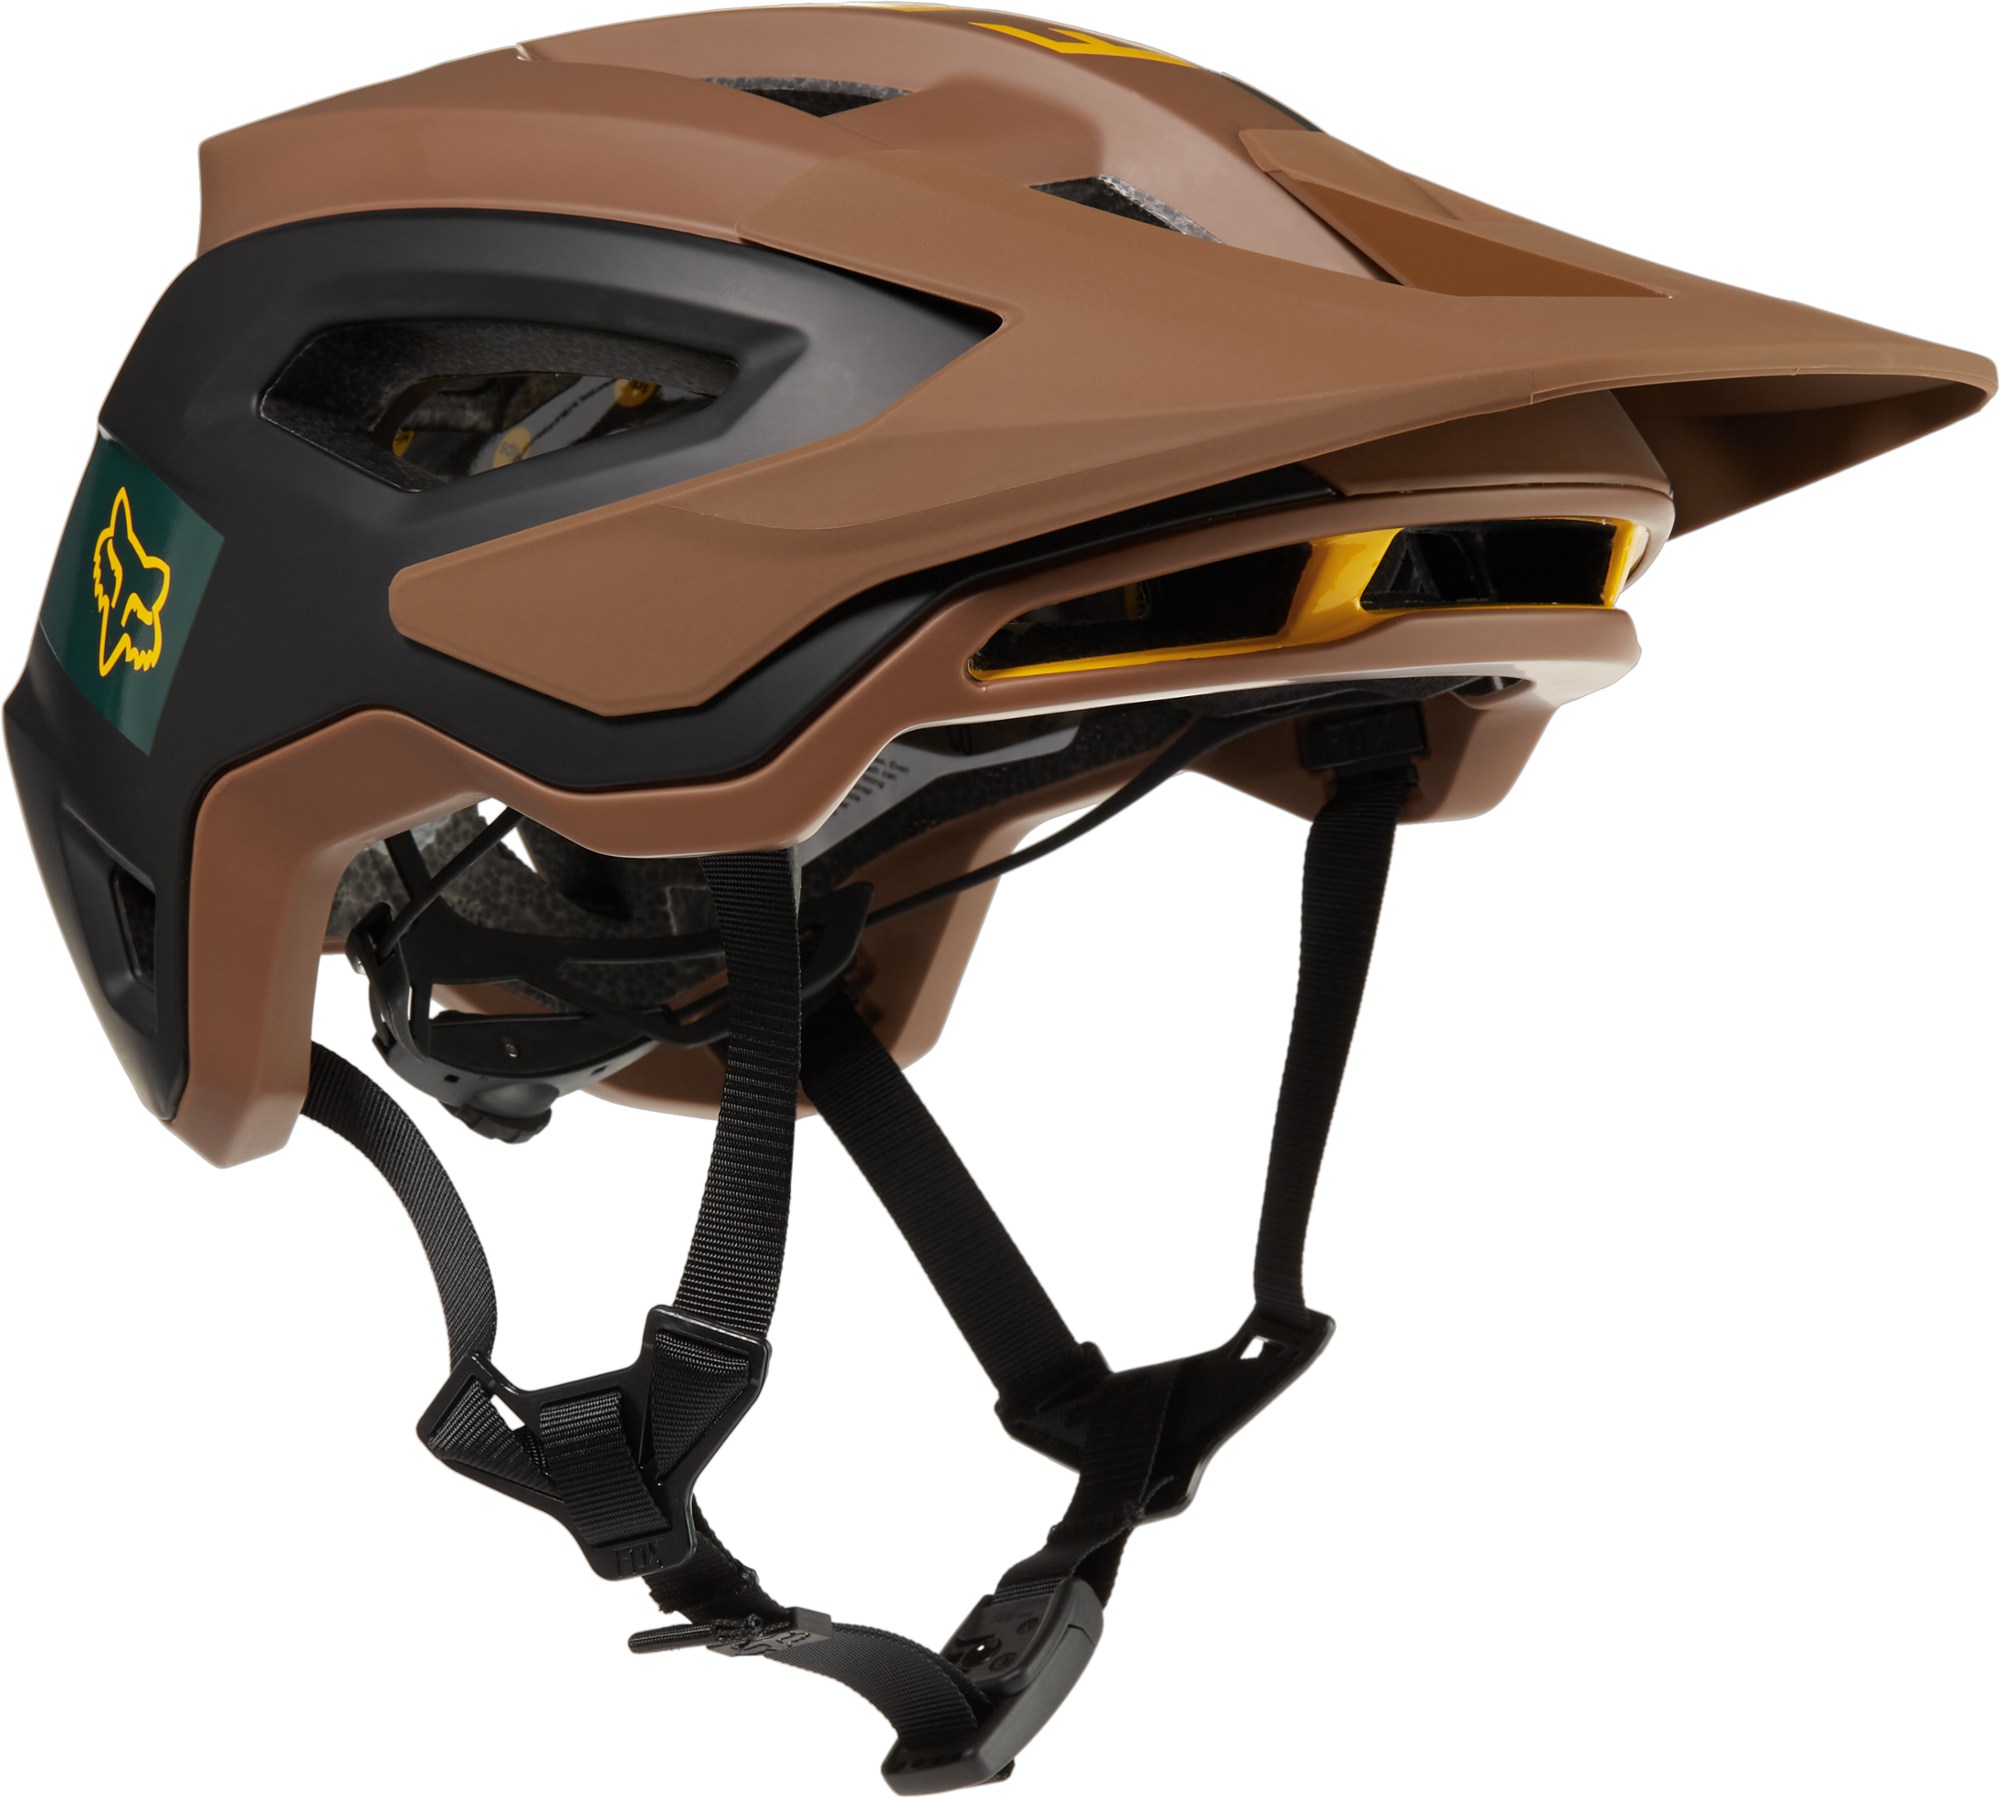 Велосипедный шлем SpeedFrame Pro Mips Fox, коричневый